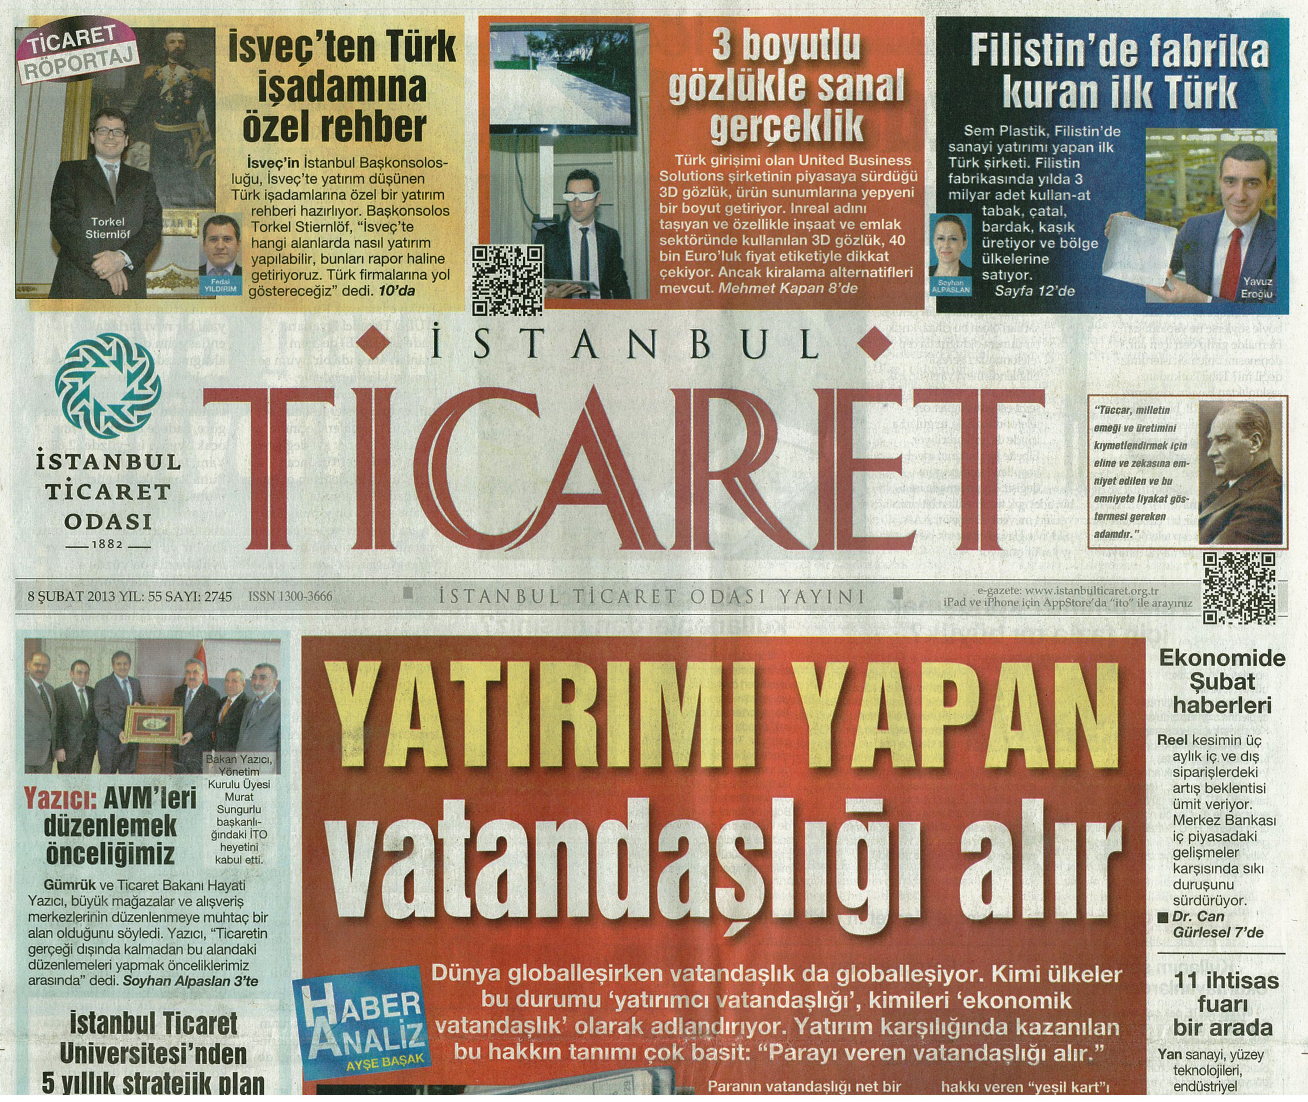 İstanbul Ticaret Odasının 8 Şubat 2013 Tarihli gazetesinde, Soyhan Alpaslan imzalı yazıda Filistin’deki yatırımımız ve firmamız konu edildi. 